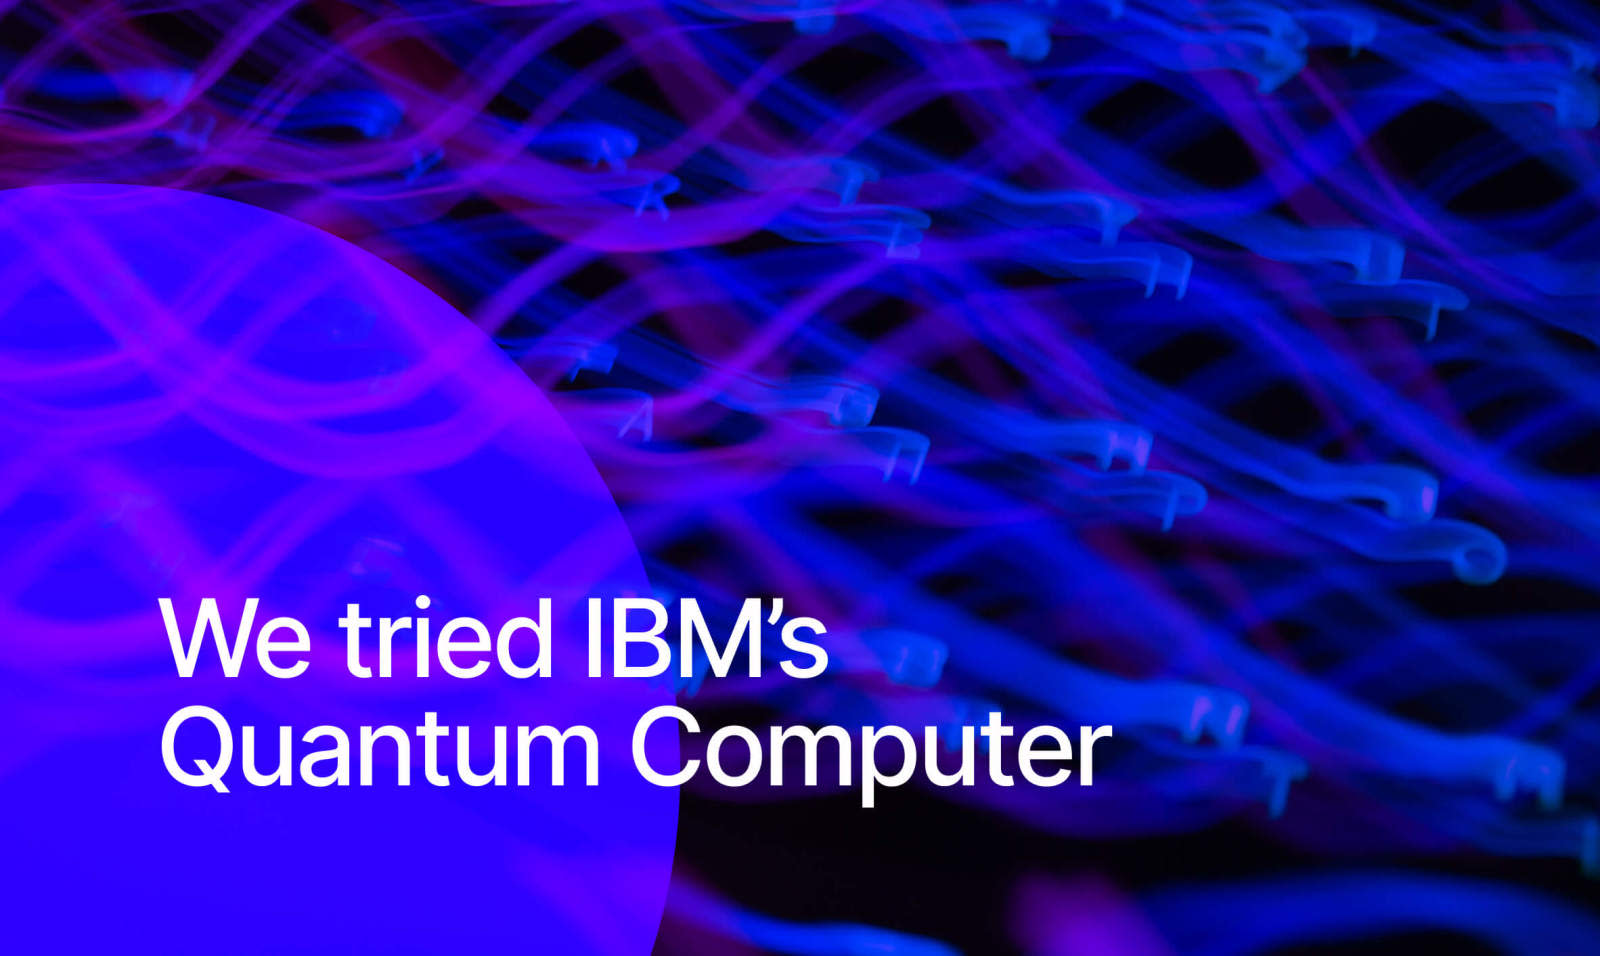 We tried IBM’s Quantum Computer